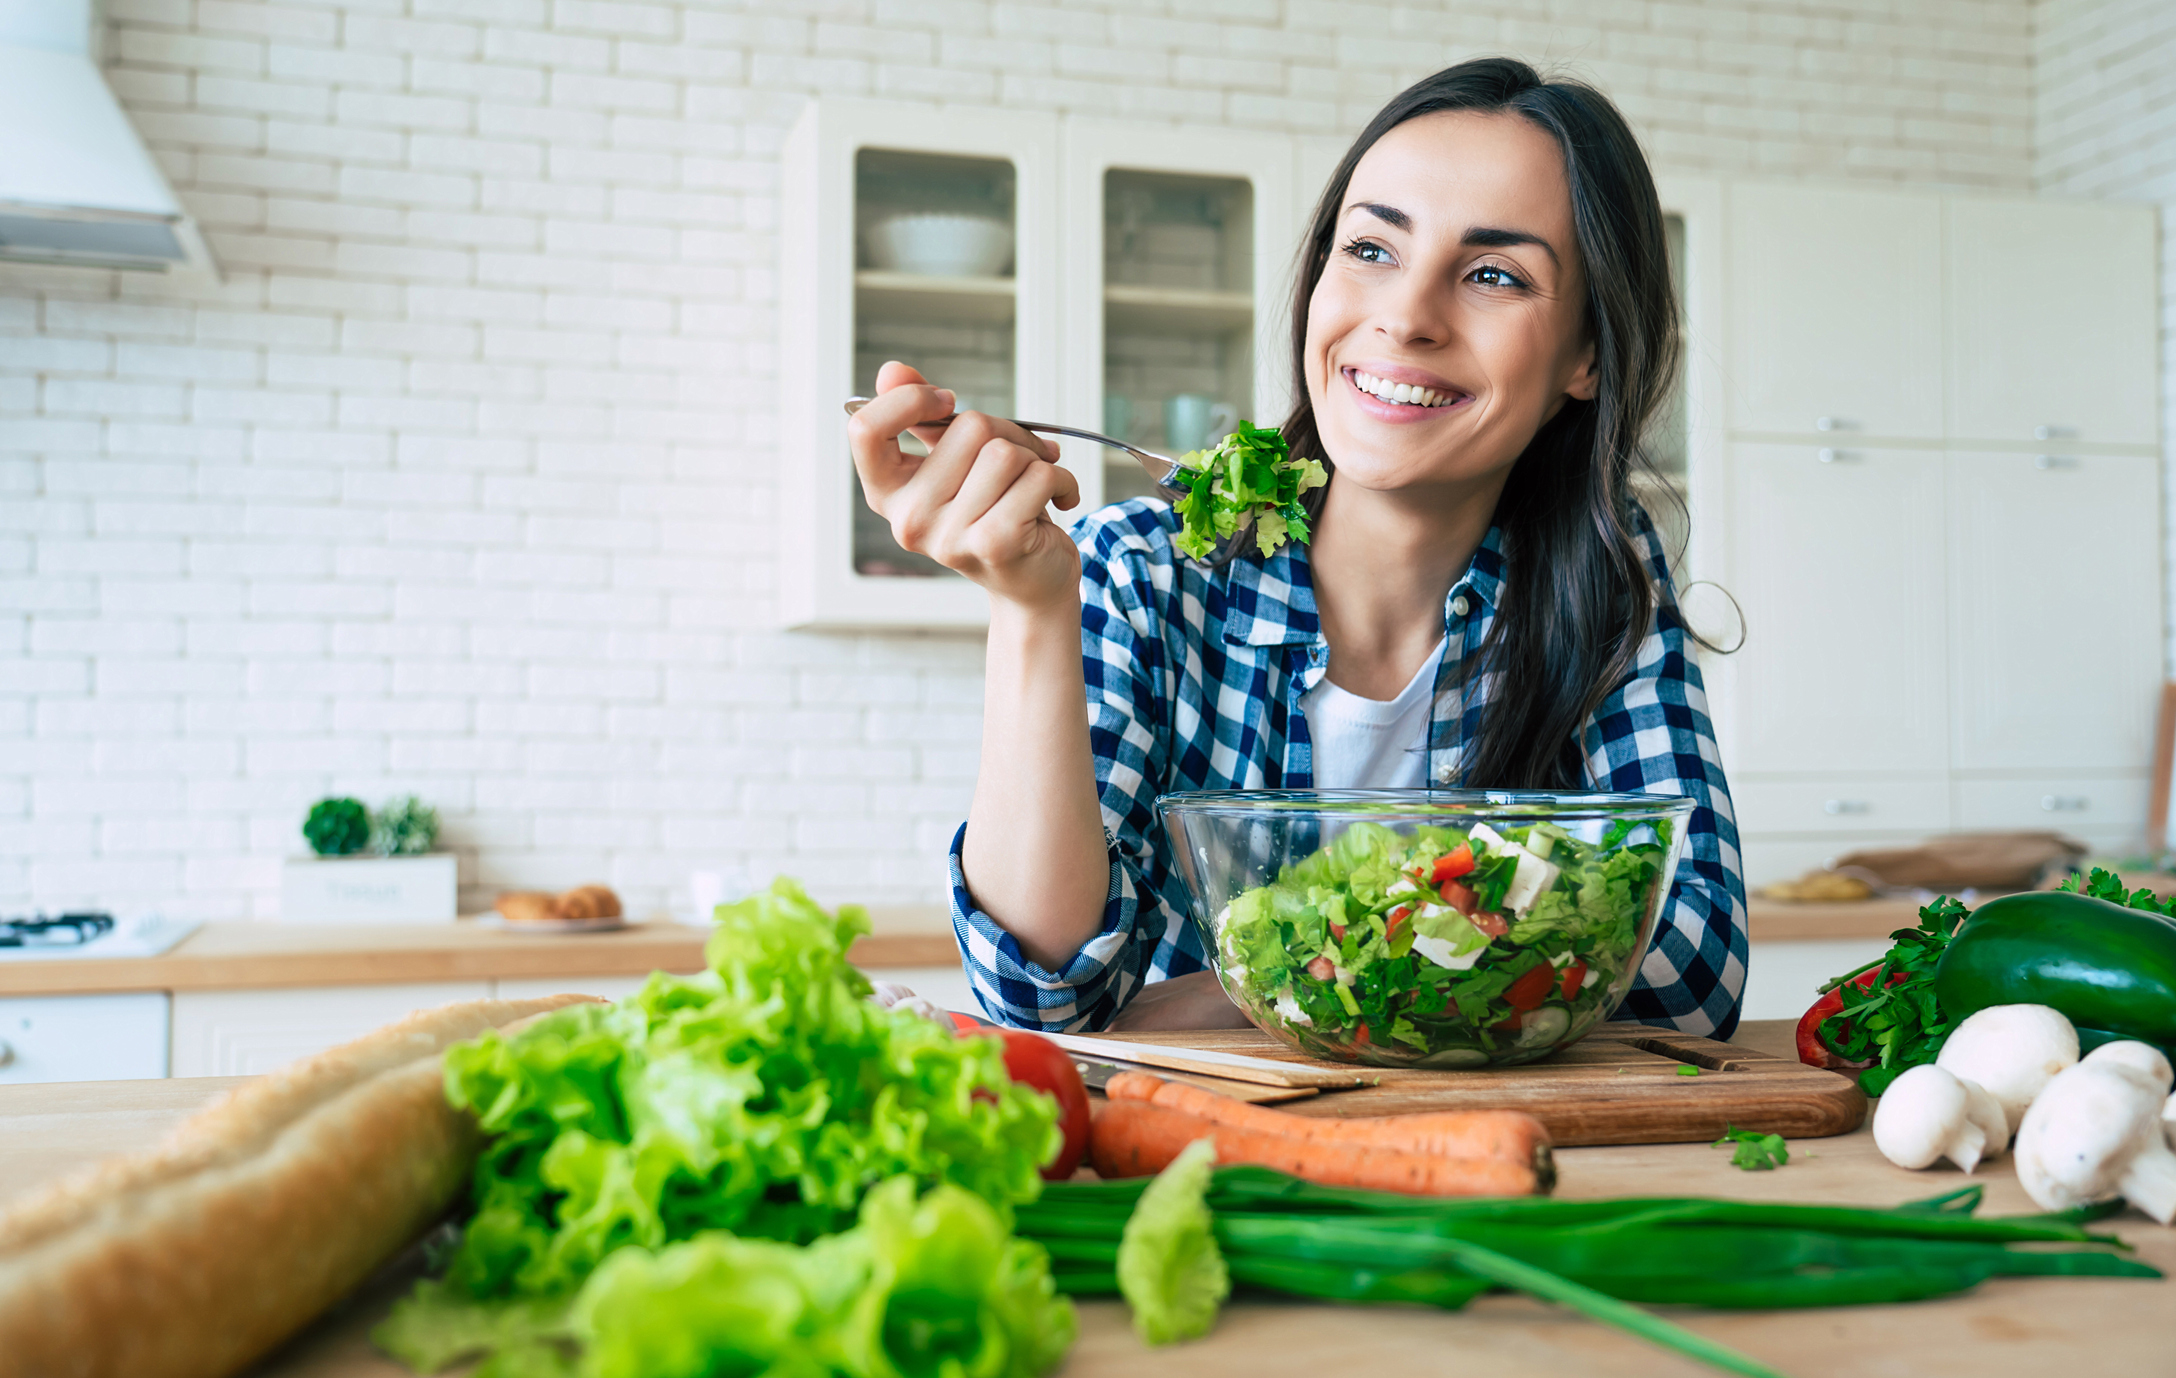 Estilo de vida saludable. Buena vida. Alimentos orgánicos. Verduras. Retrato de primer plano de una joven feliz mientras prueba una ensalada sabrosa vegana en la cocina de su casa.